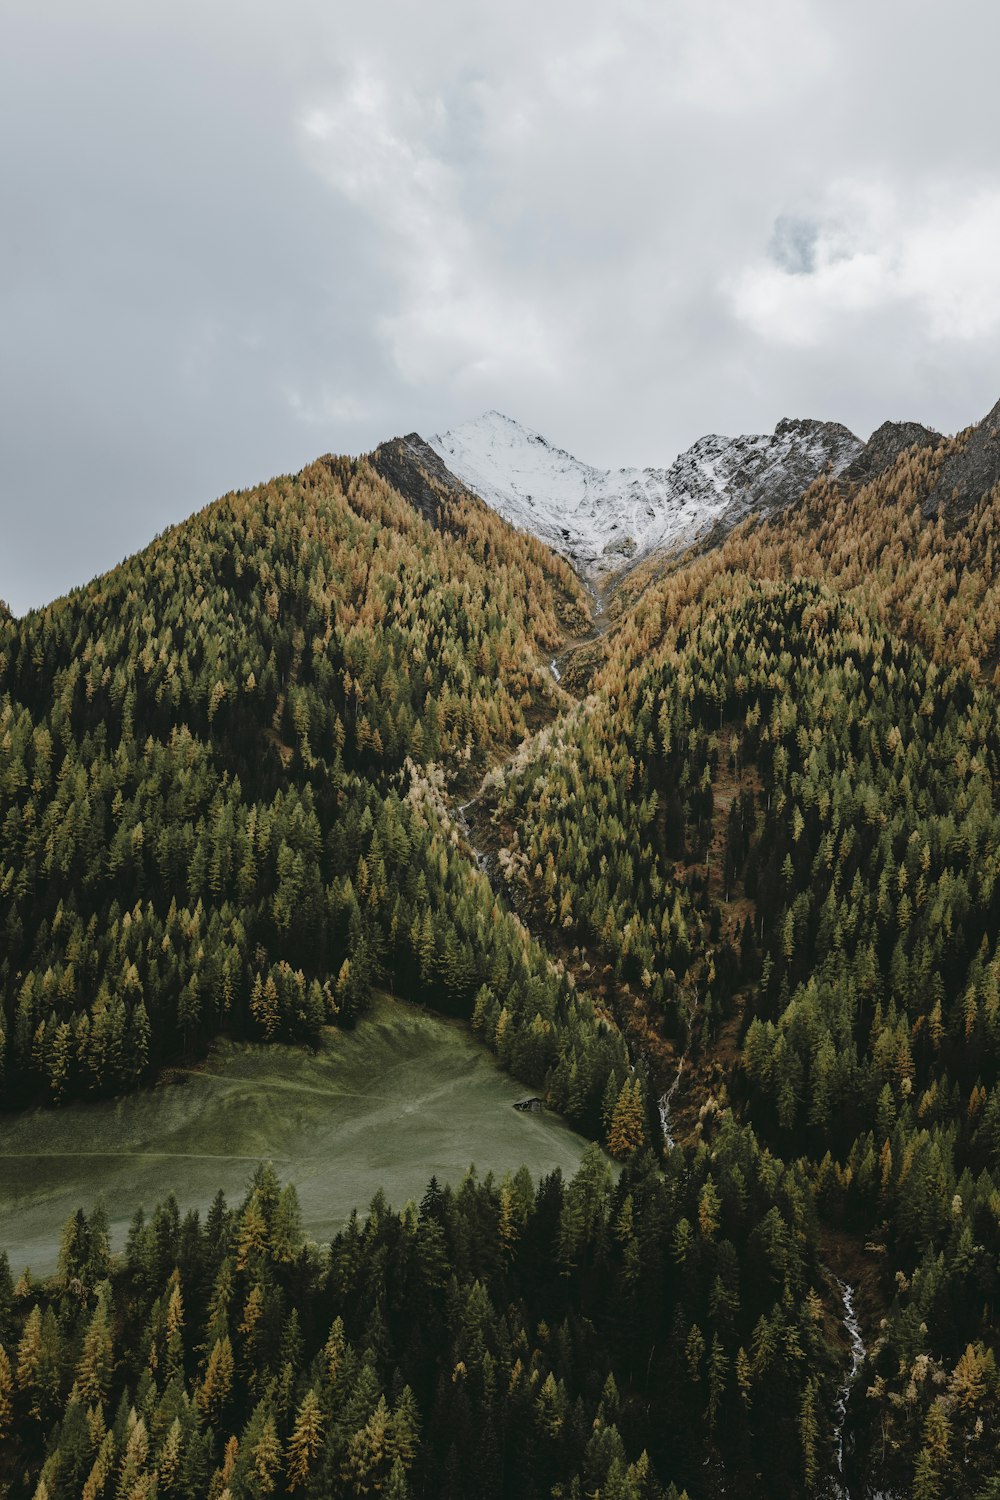 Una vista di una montagna con alberi e neve in cima